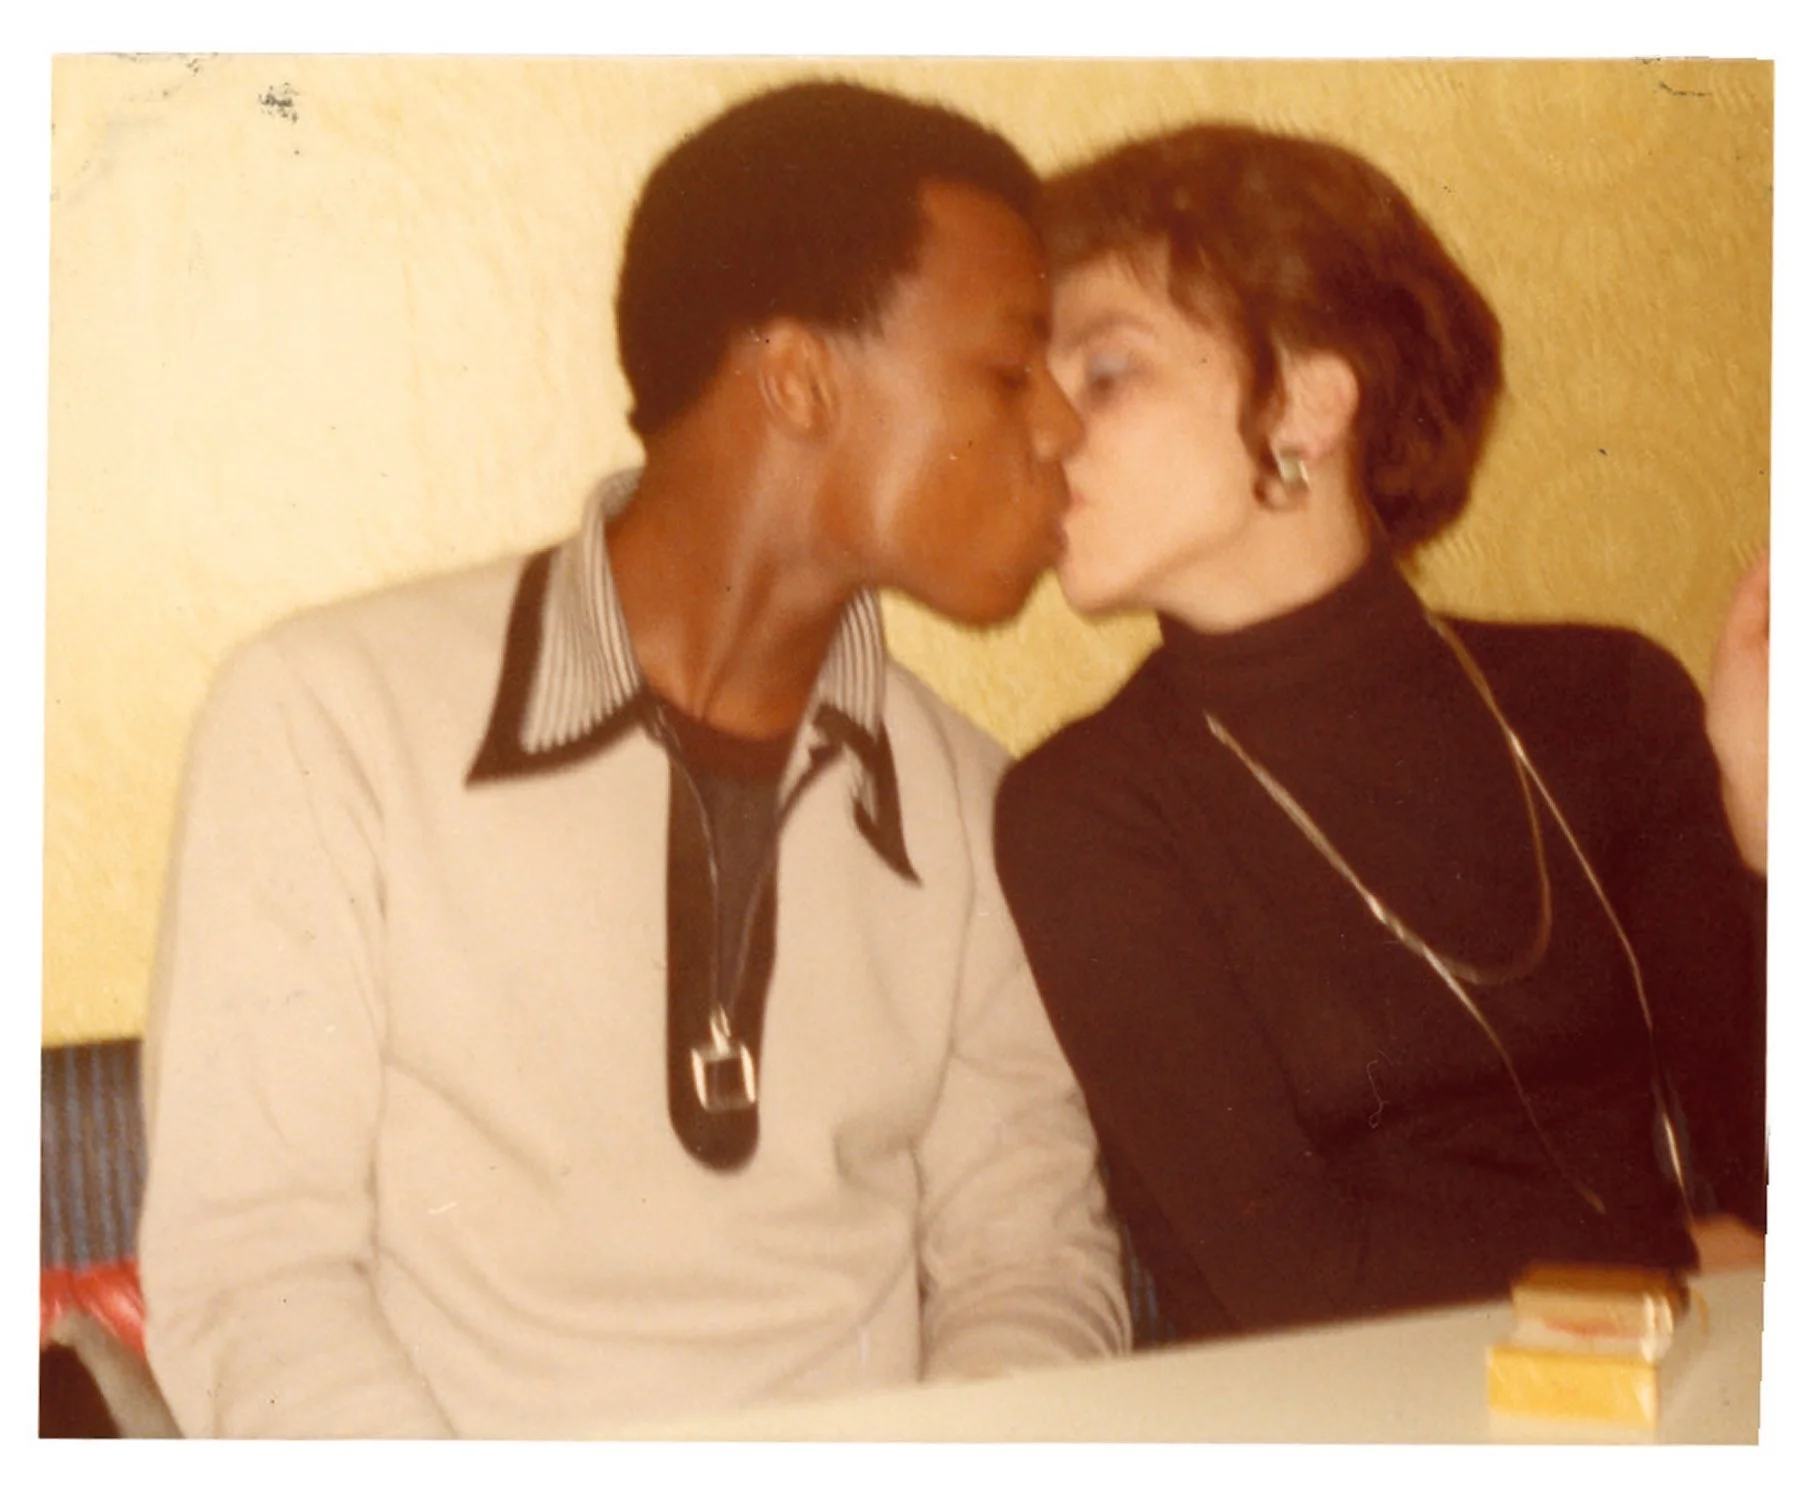 Машина времени: архивные фото о том, как целовались влюбленные 100 лет назад - фото 486037